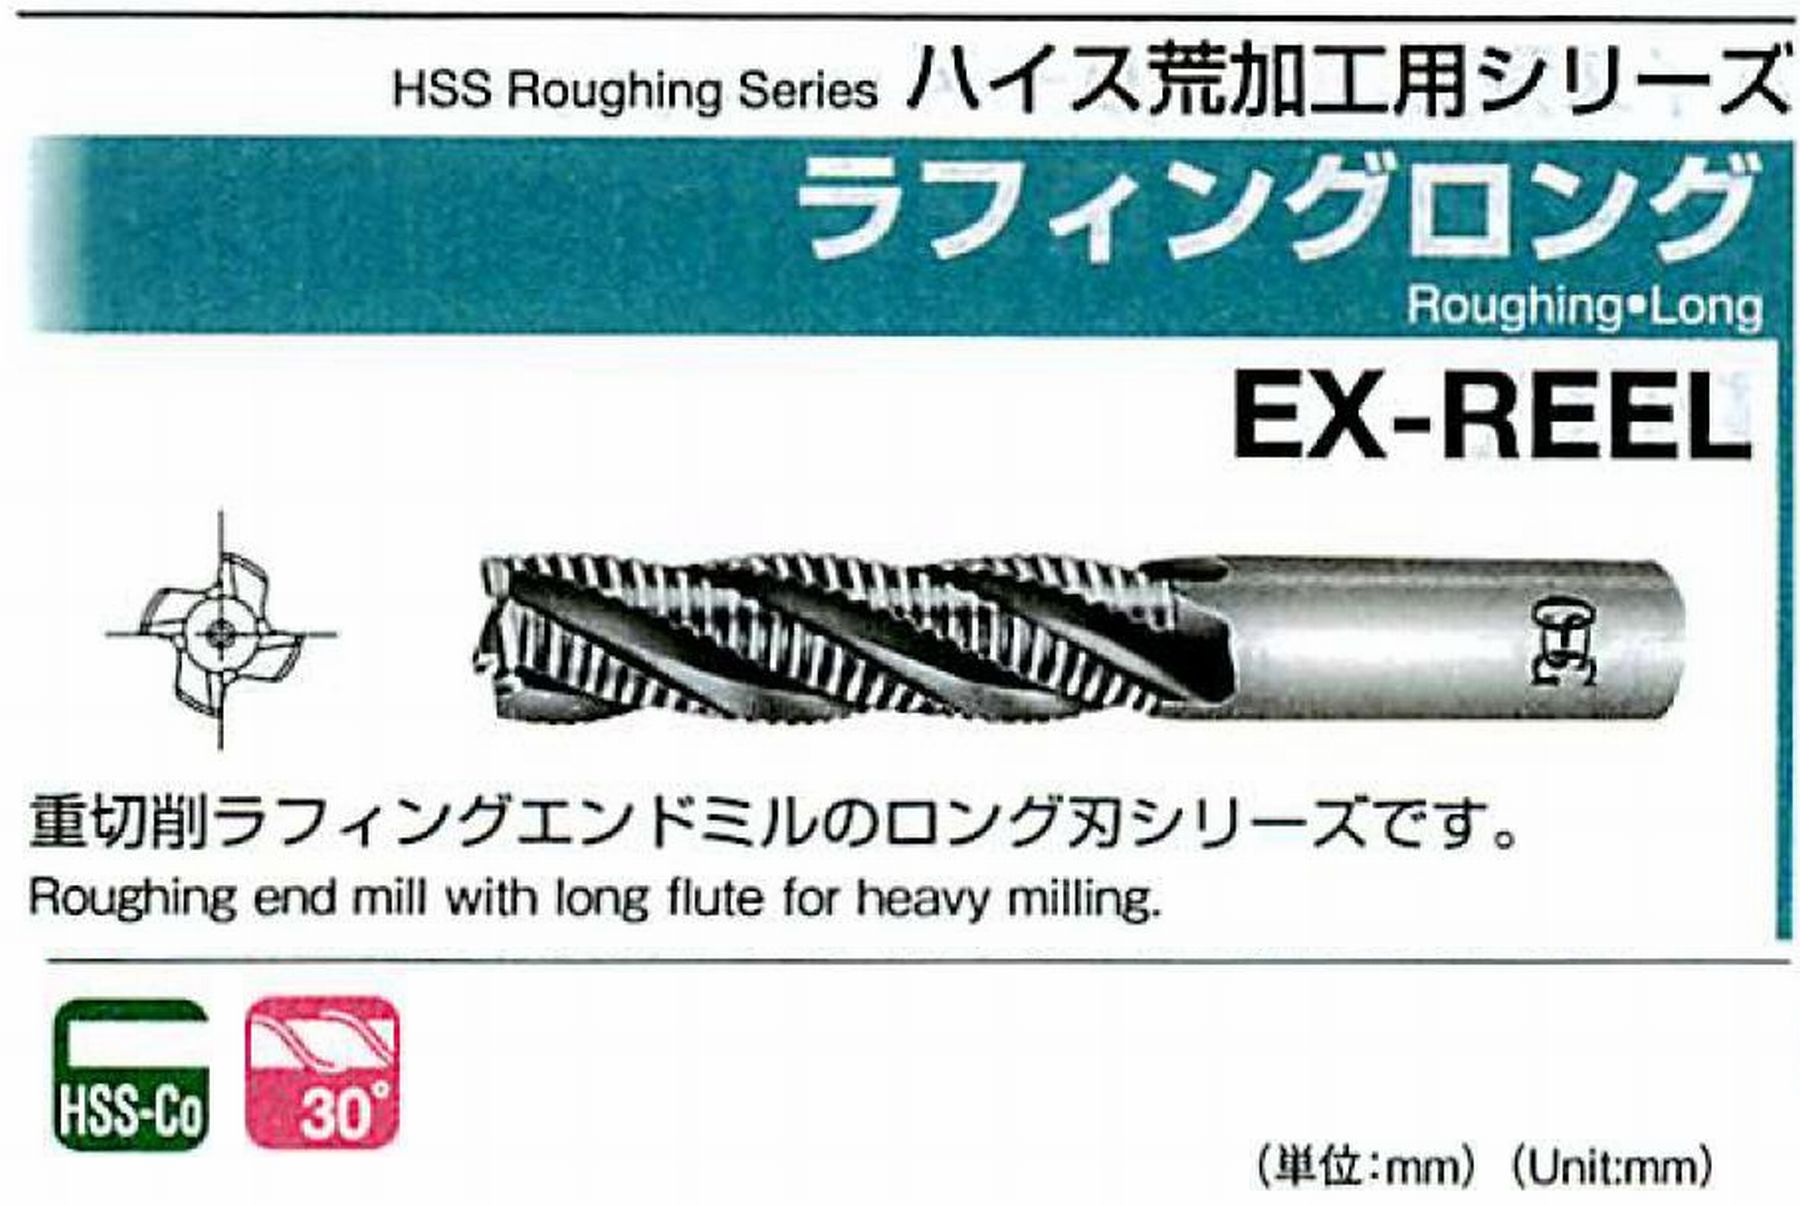 オーエスジー/OSG ラフィング ロング EX-REEL 外径27 全長166 刃長90 シャンク径25mm 刃数5